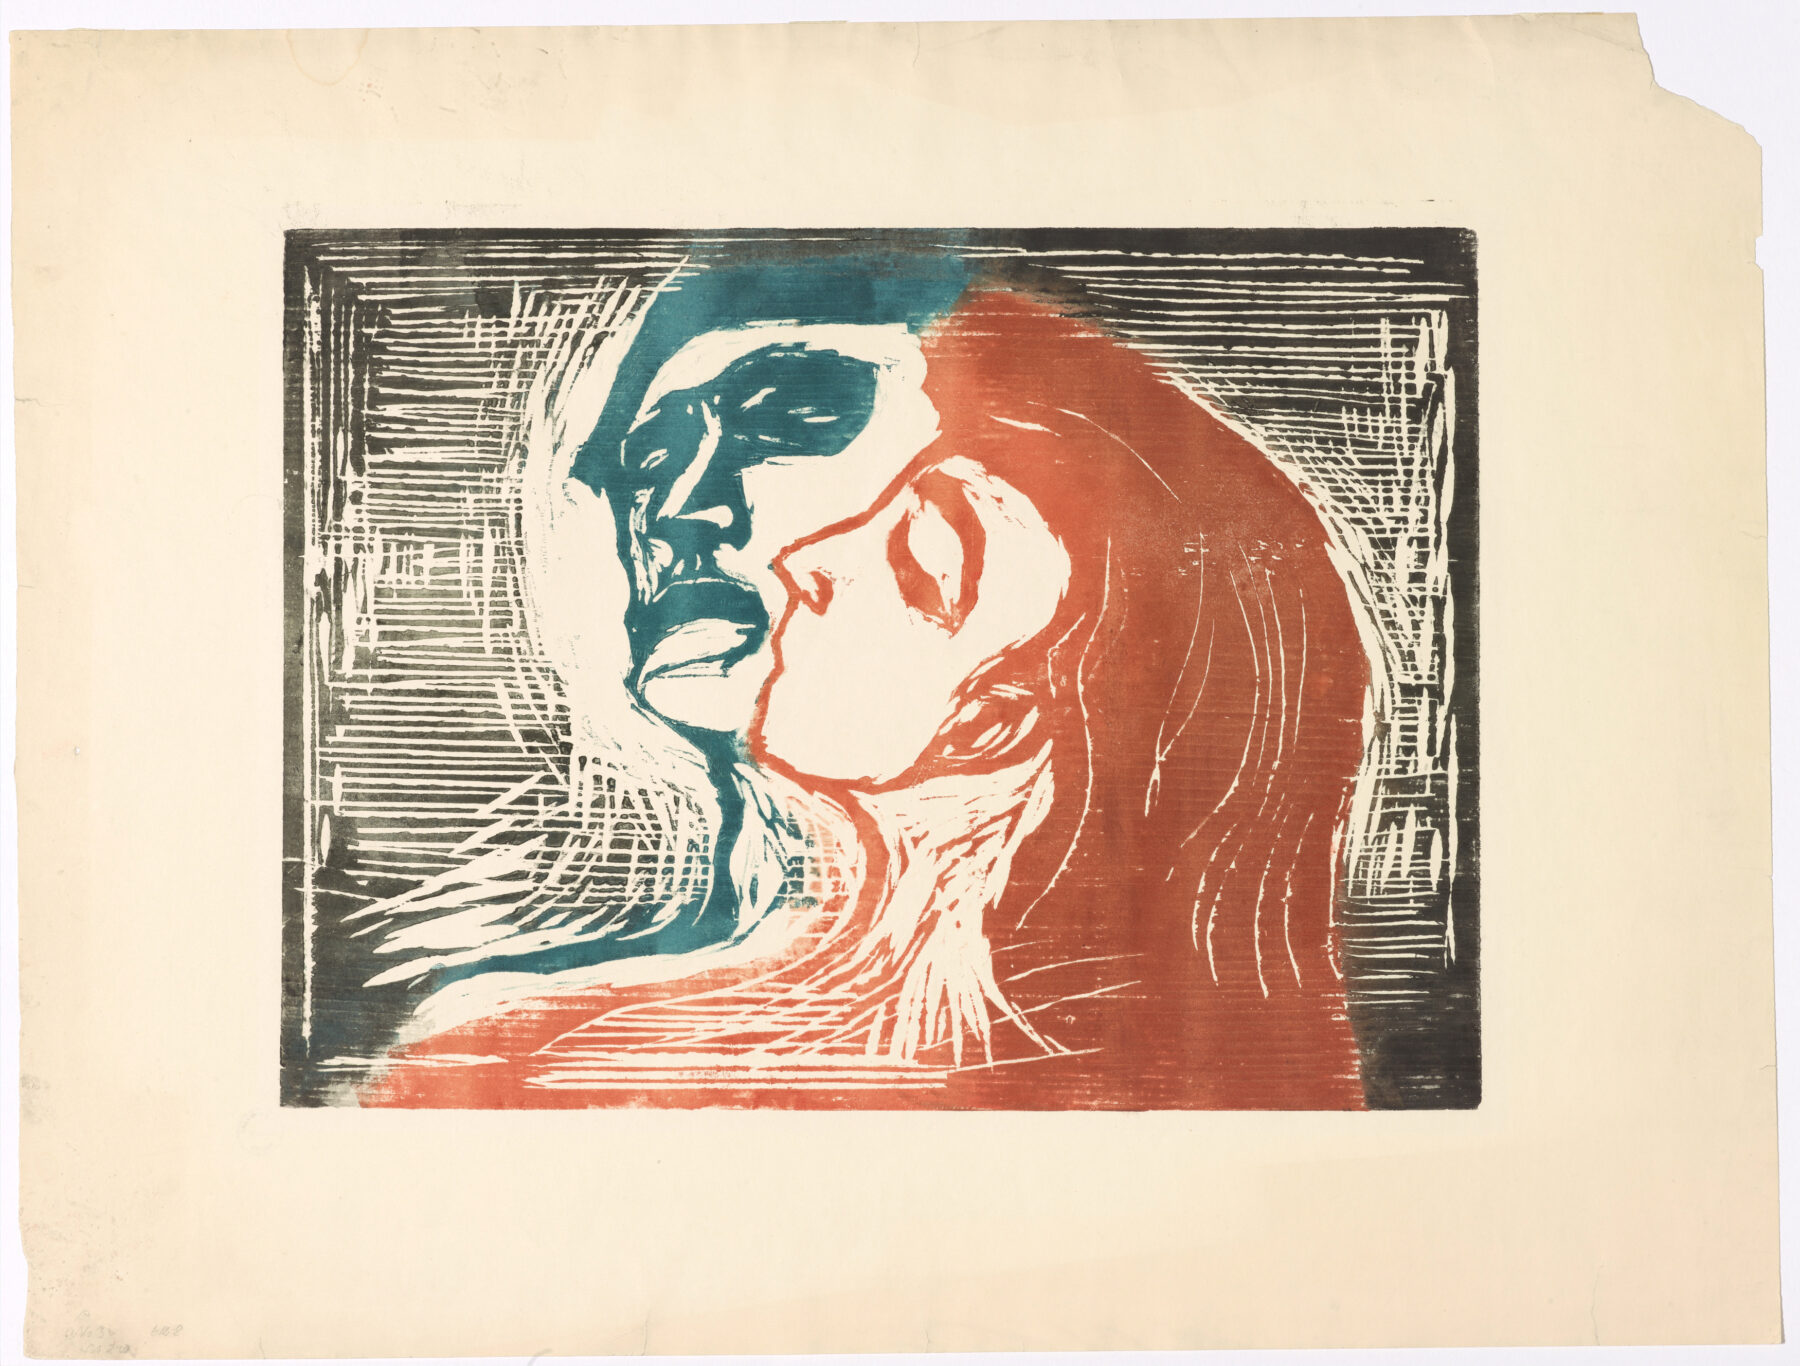 Edvard Munch Paintings, Bio, Ideas